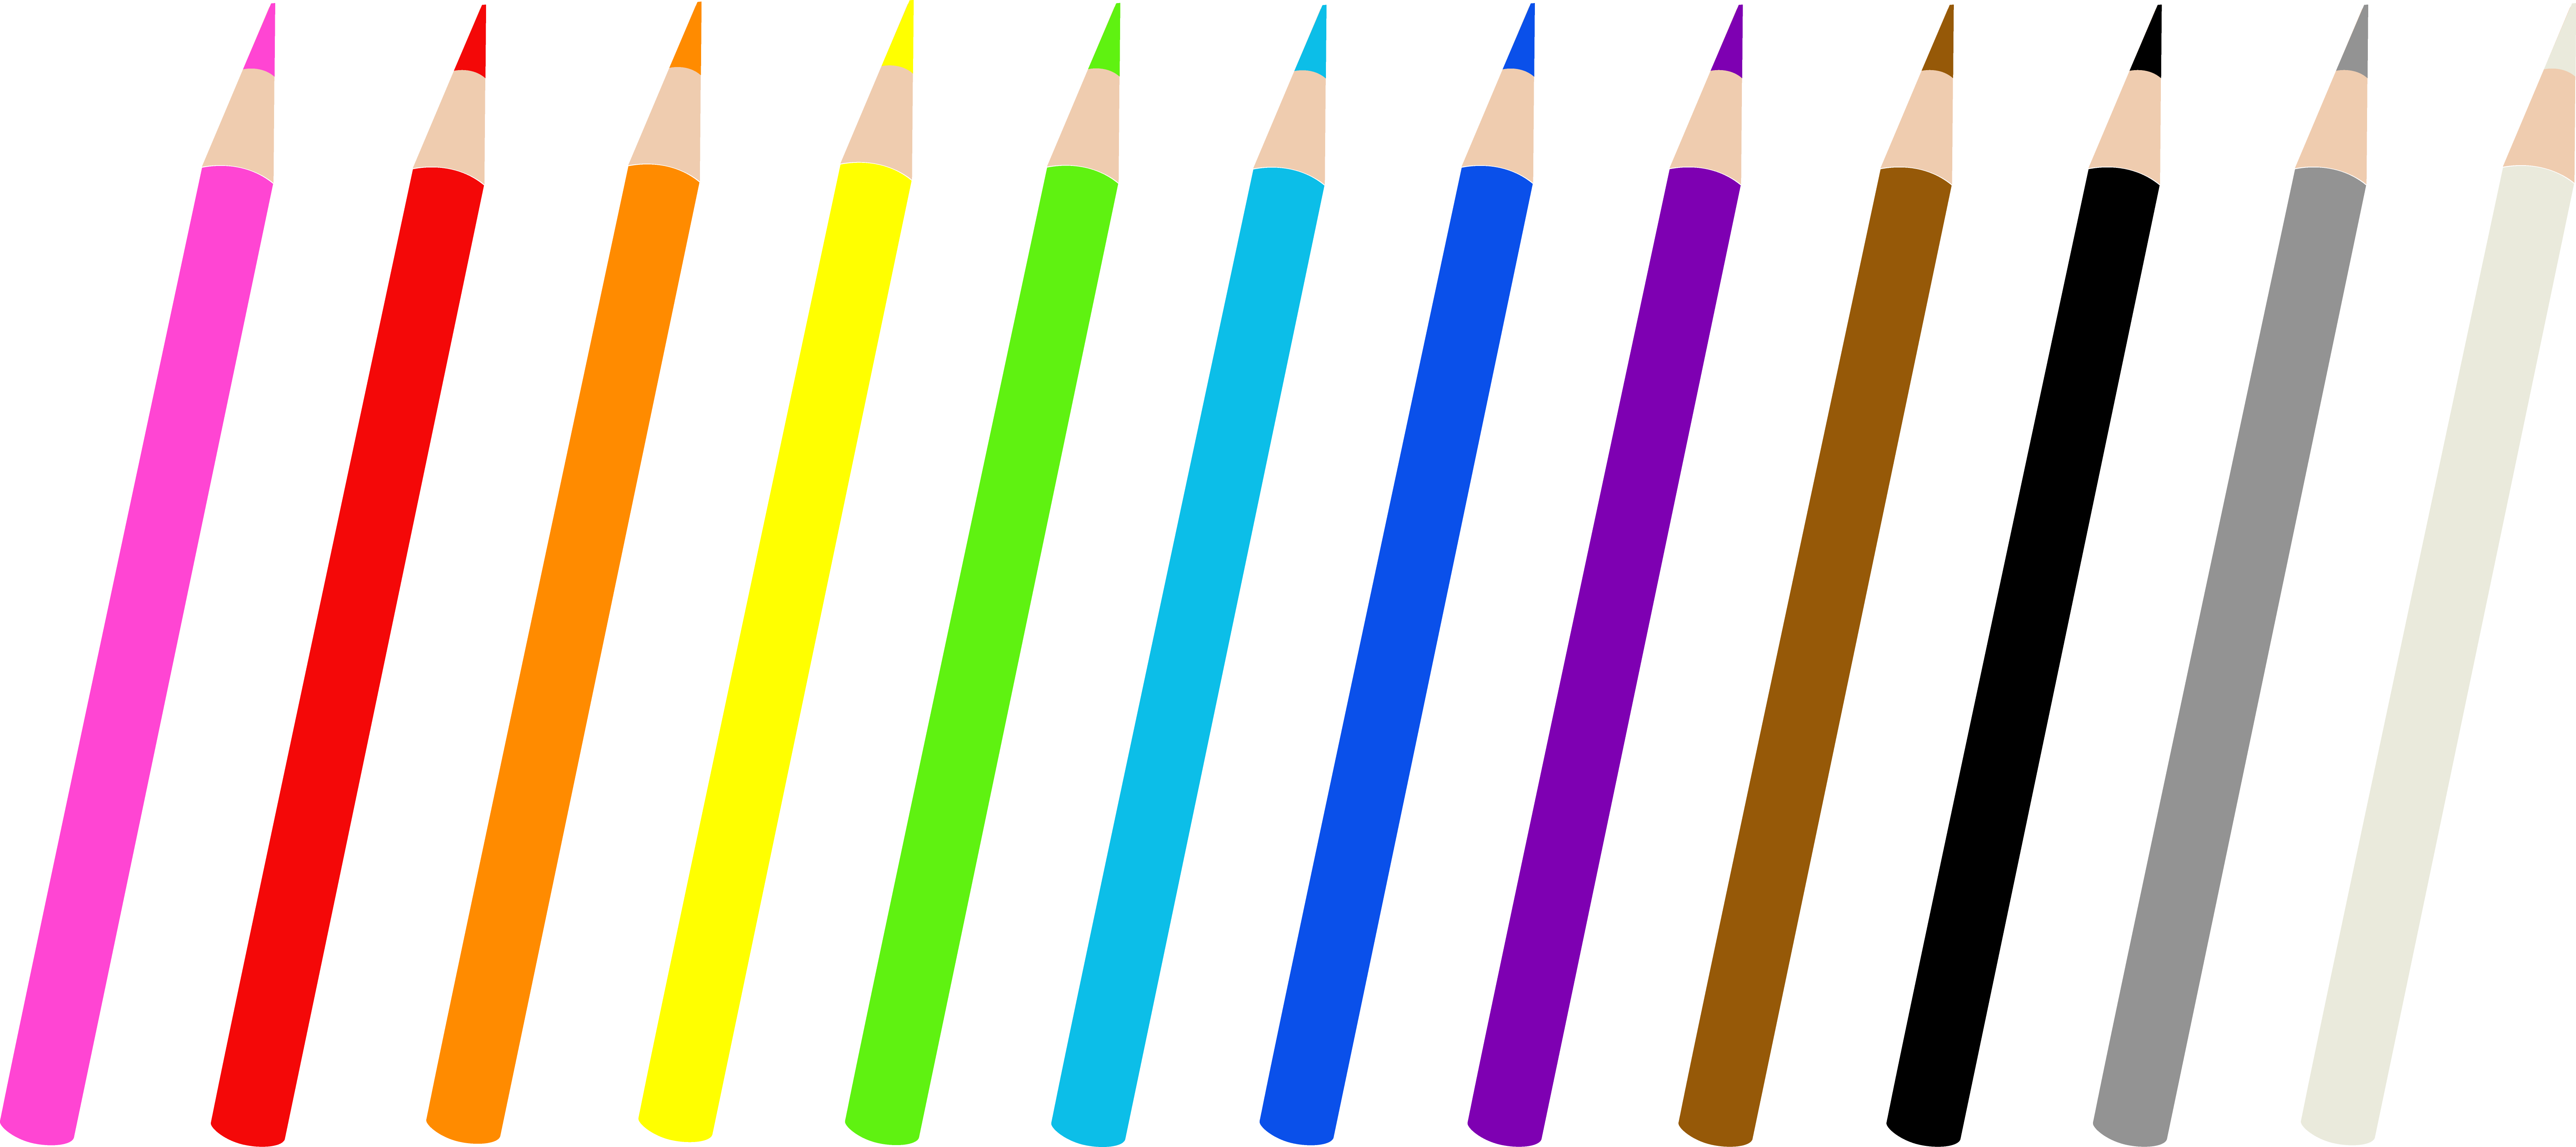 Set Of Twelve Colored Pencils - Dibujo De Lapices De Colores Para Imprimir (6720x2993)